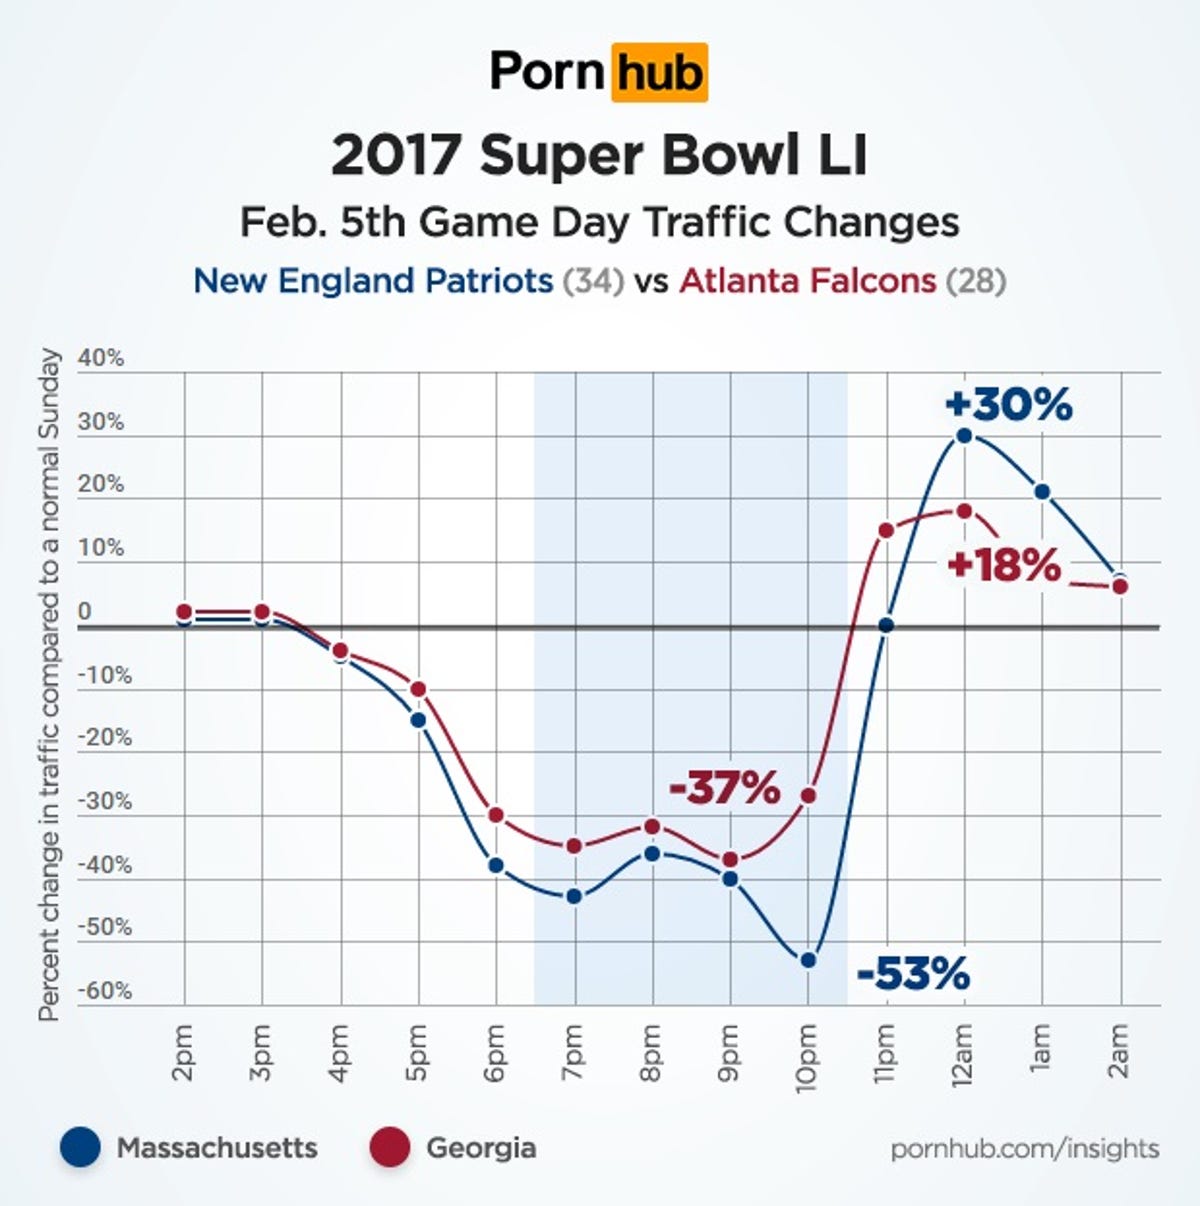 pornhub-insights-super-bowl-2017-mass-georgia-traffic.jpg